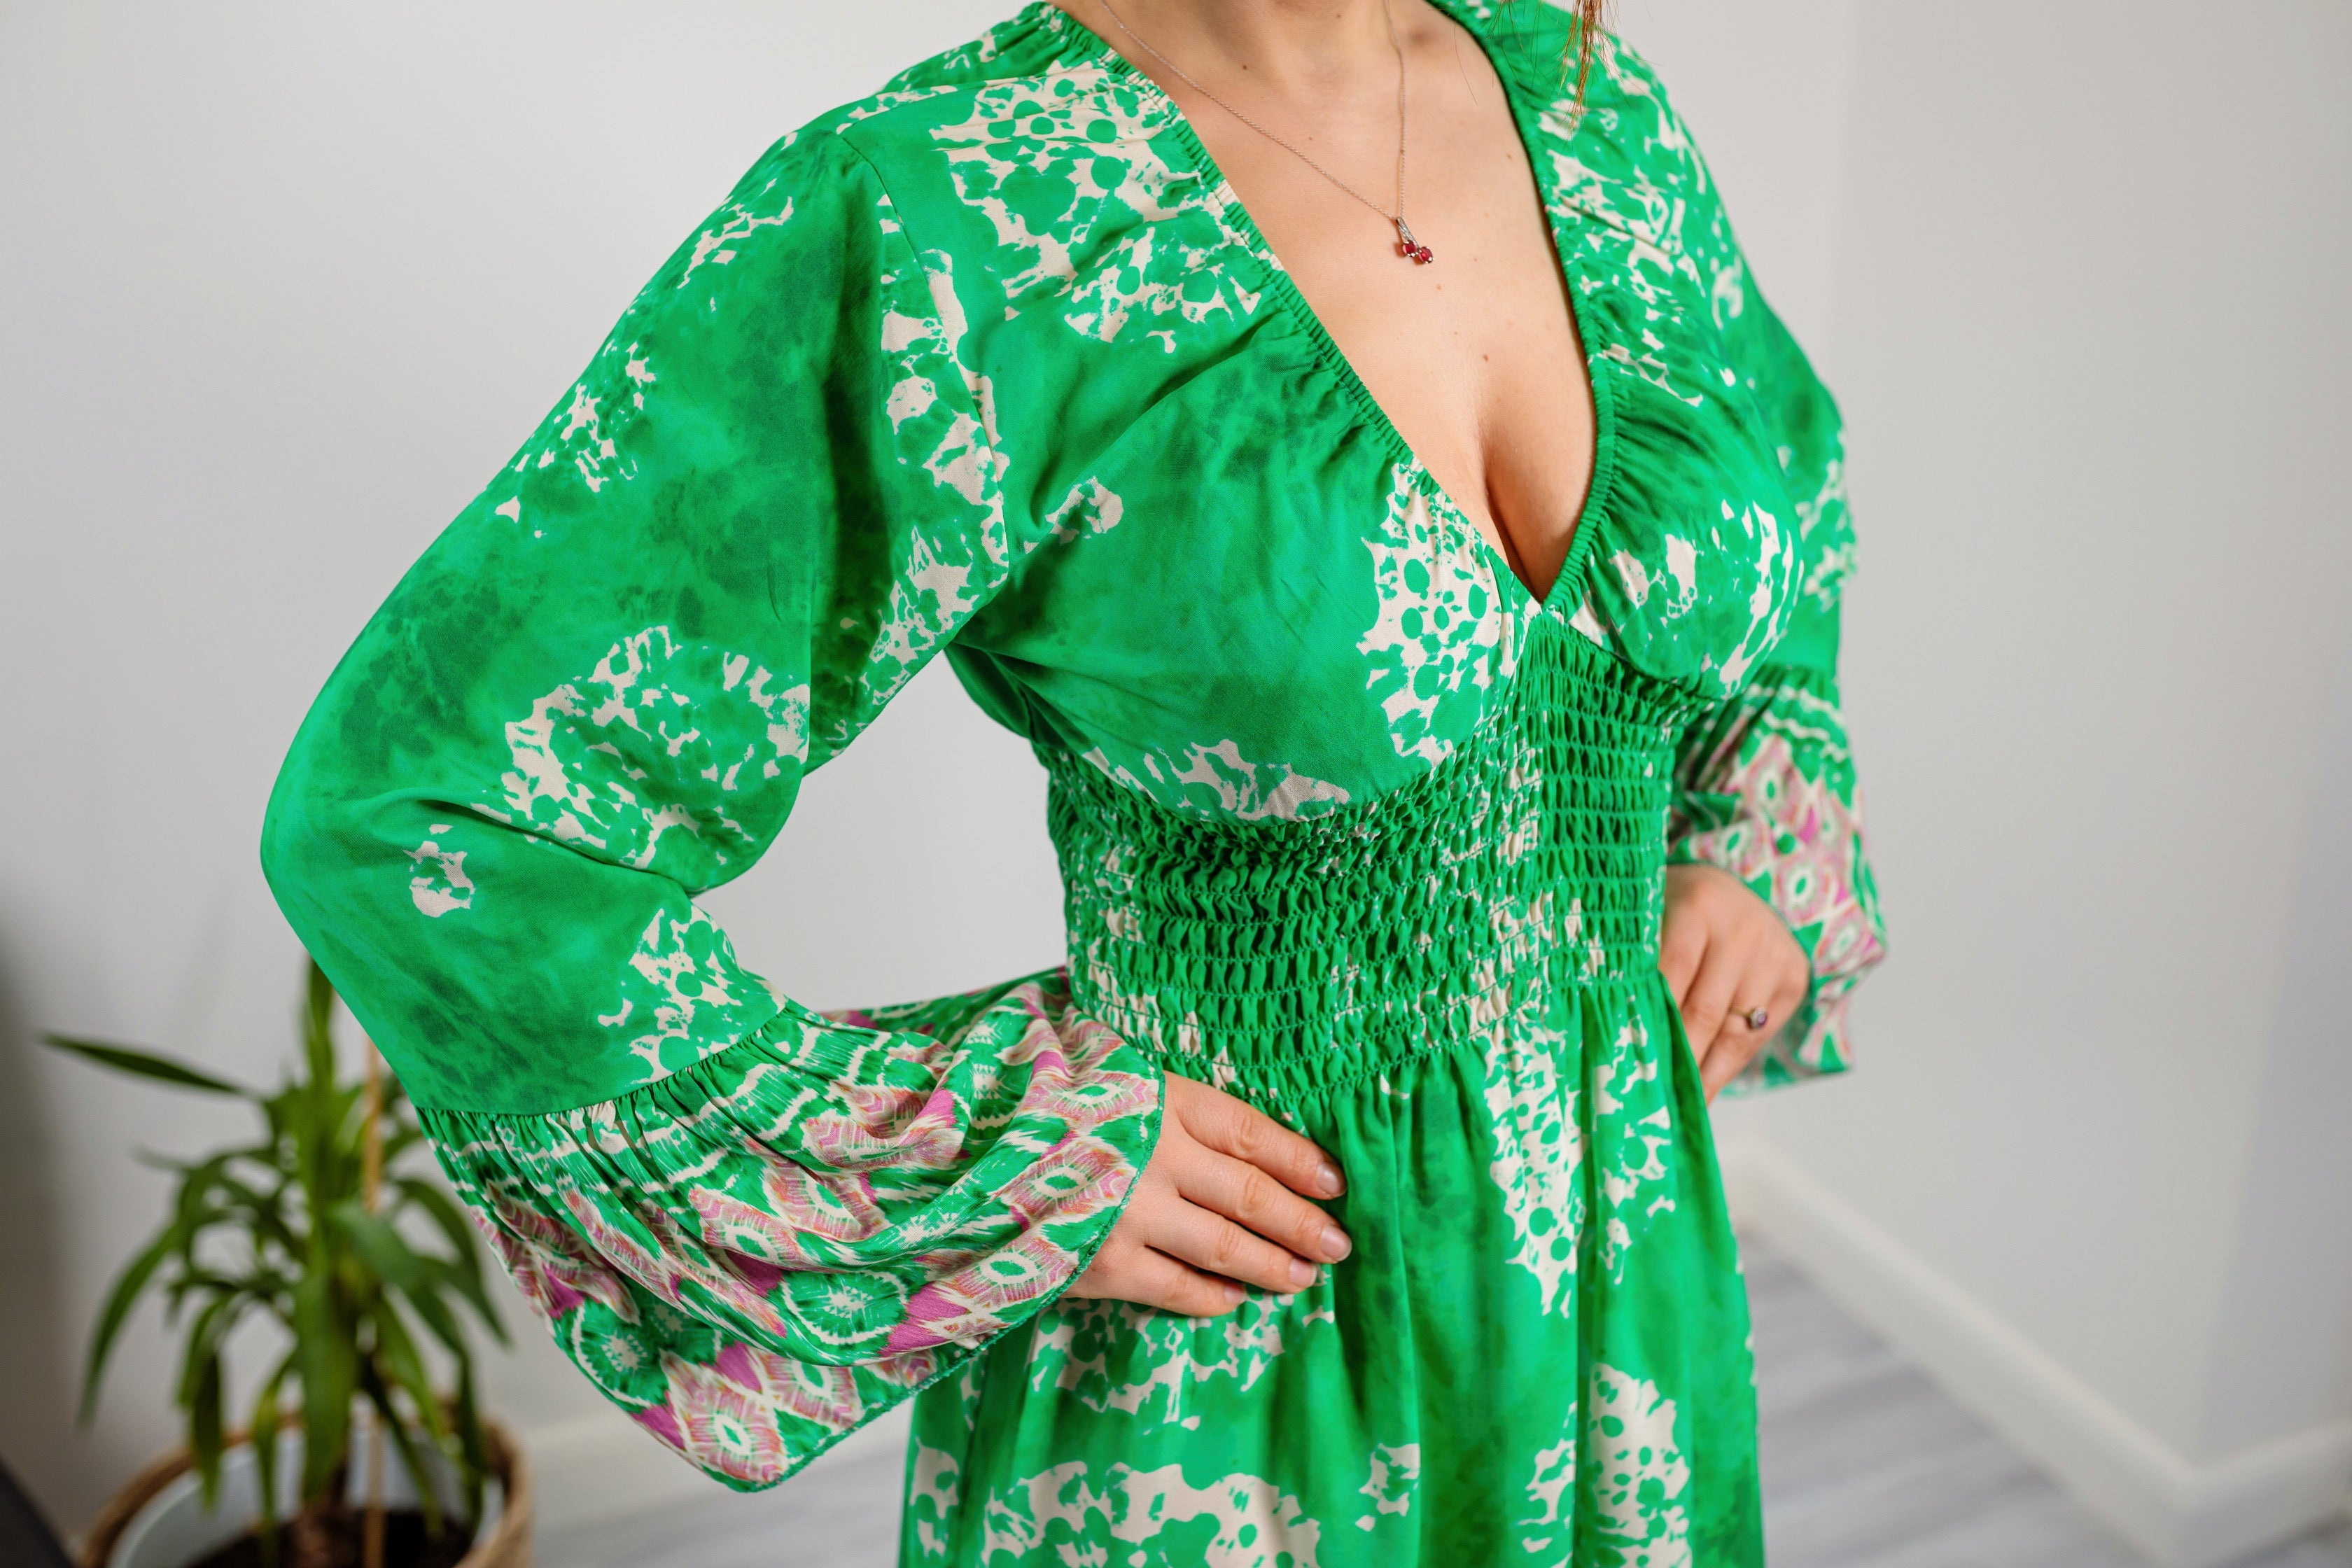 Long Sleeve V Neck Summer Midaxi Dress In Bright Green